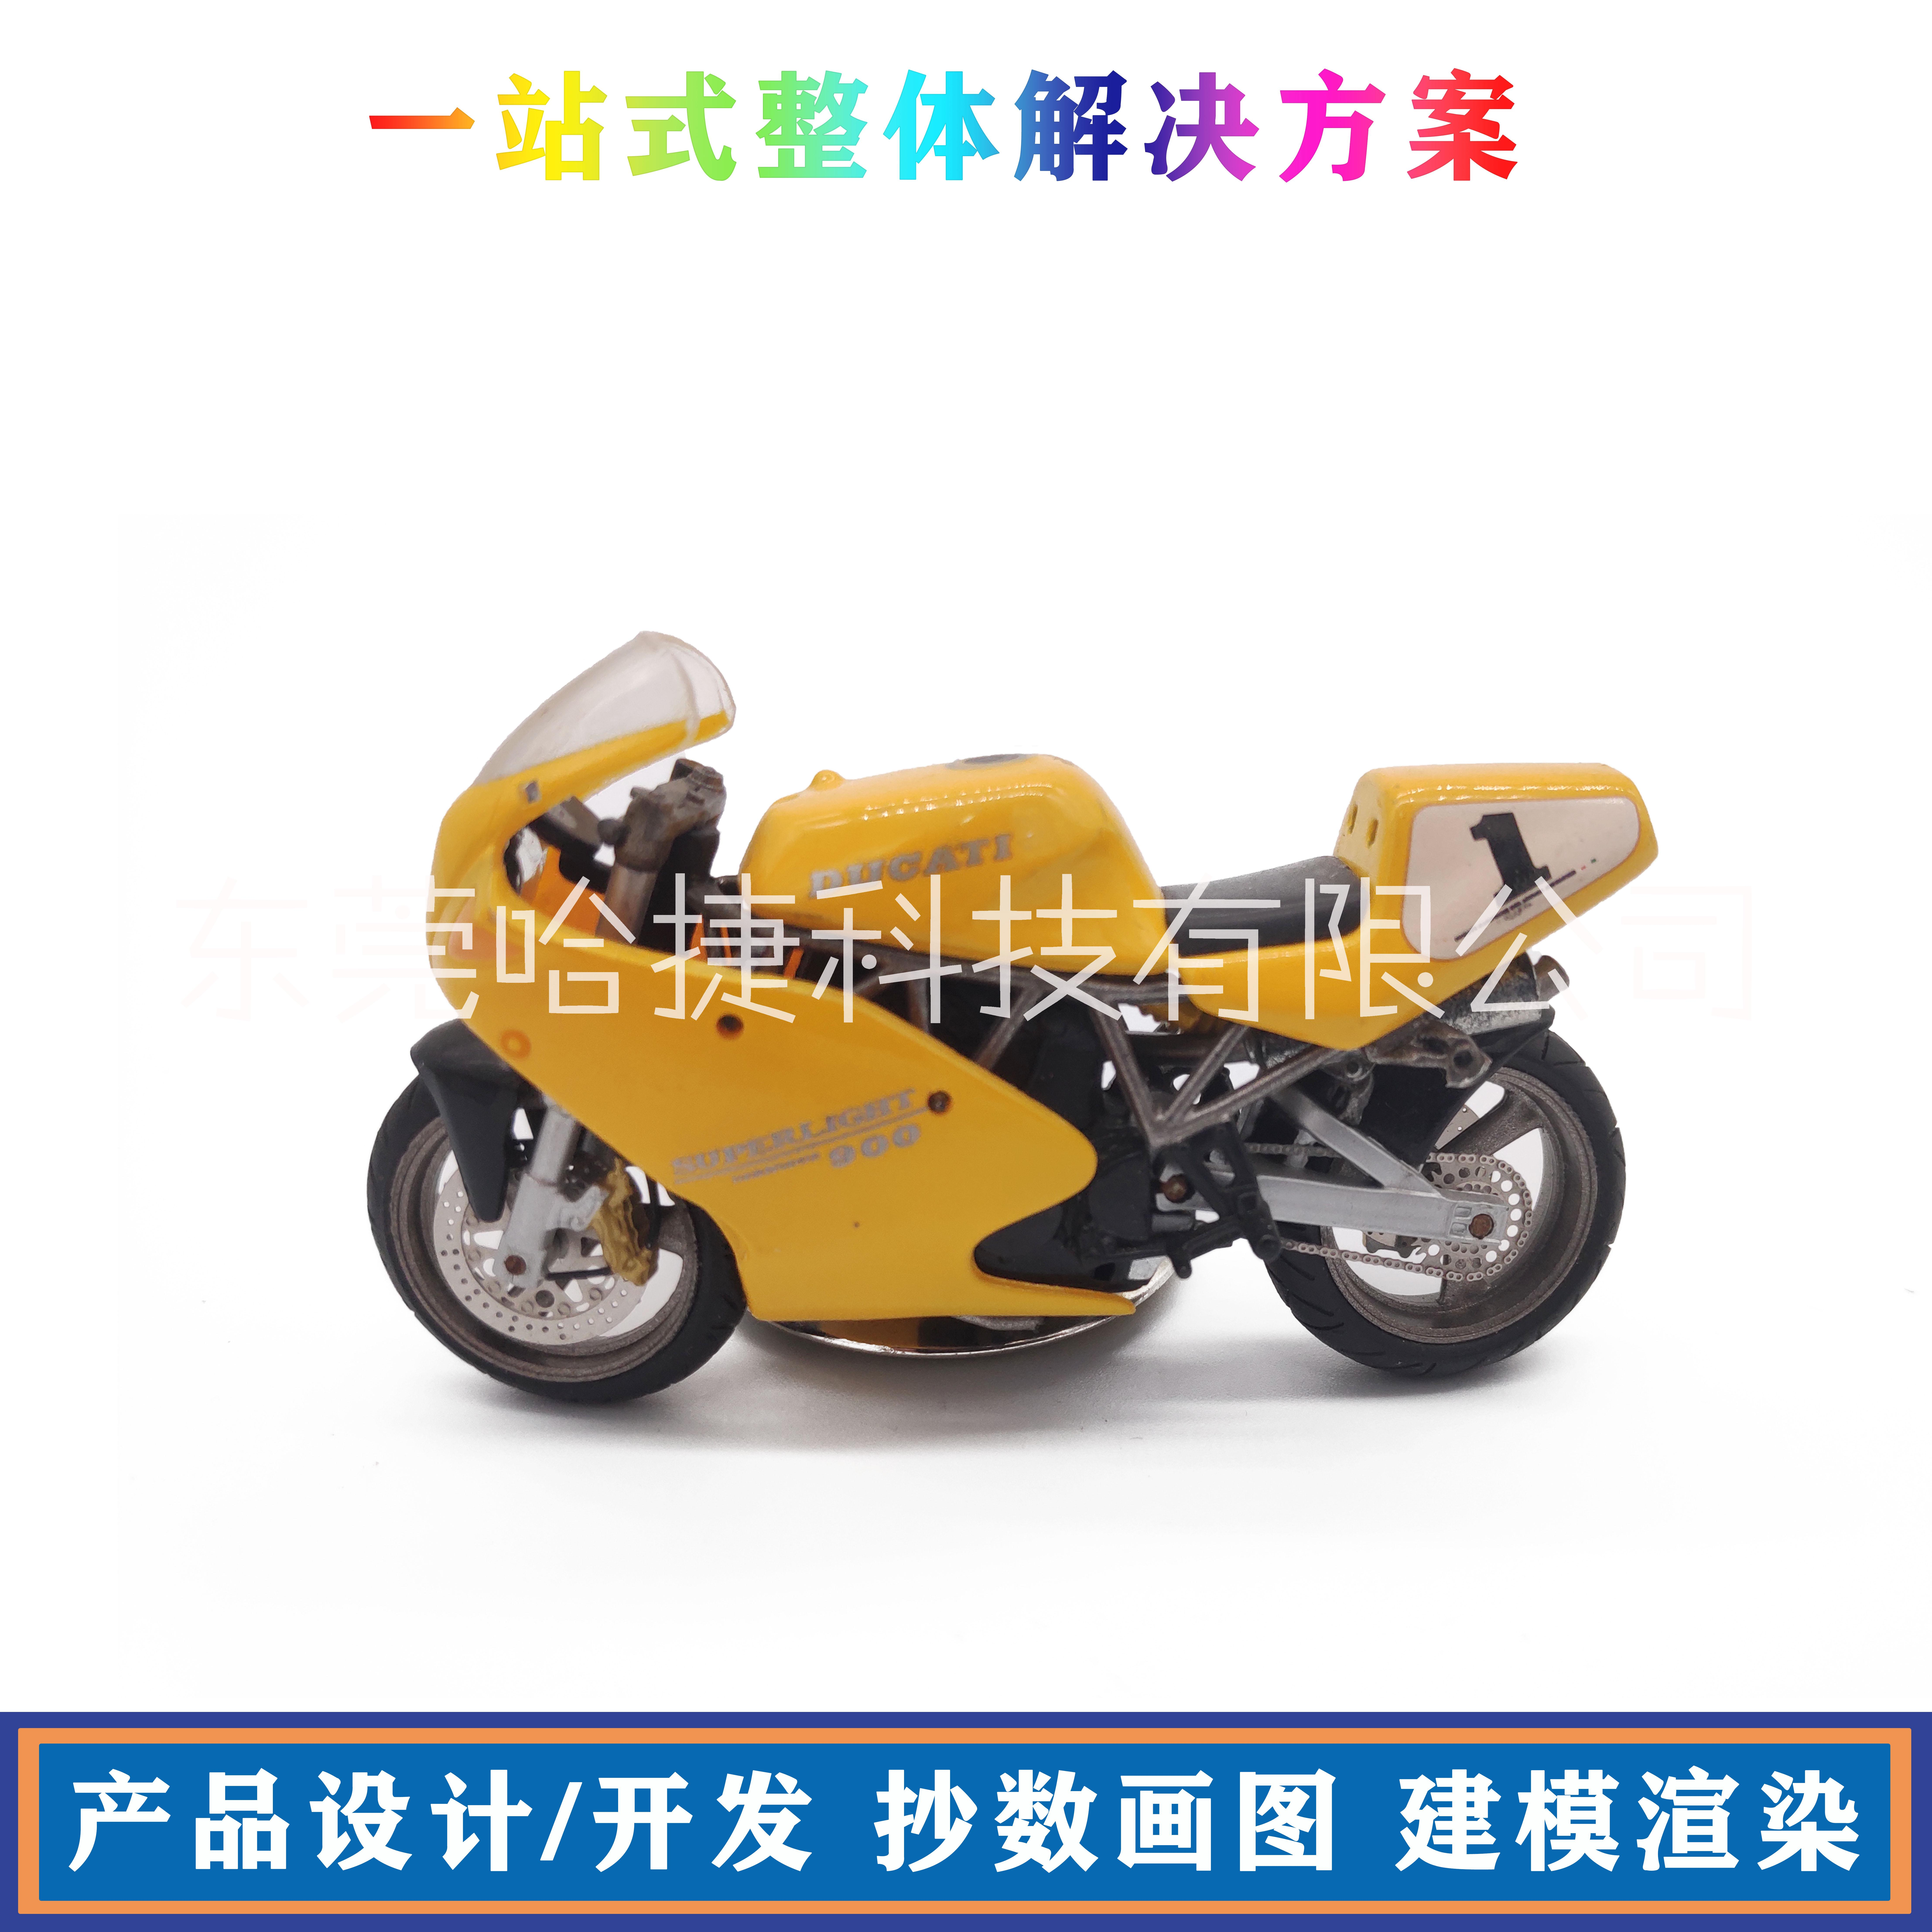 东莞市交通工具设计 玩具模型设计厂家交通工具设计 玩具模型设计 仿真车仔模型设计 样机制作